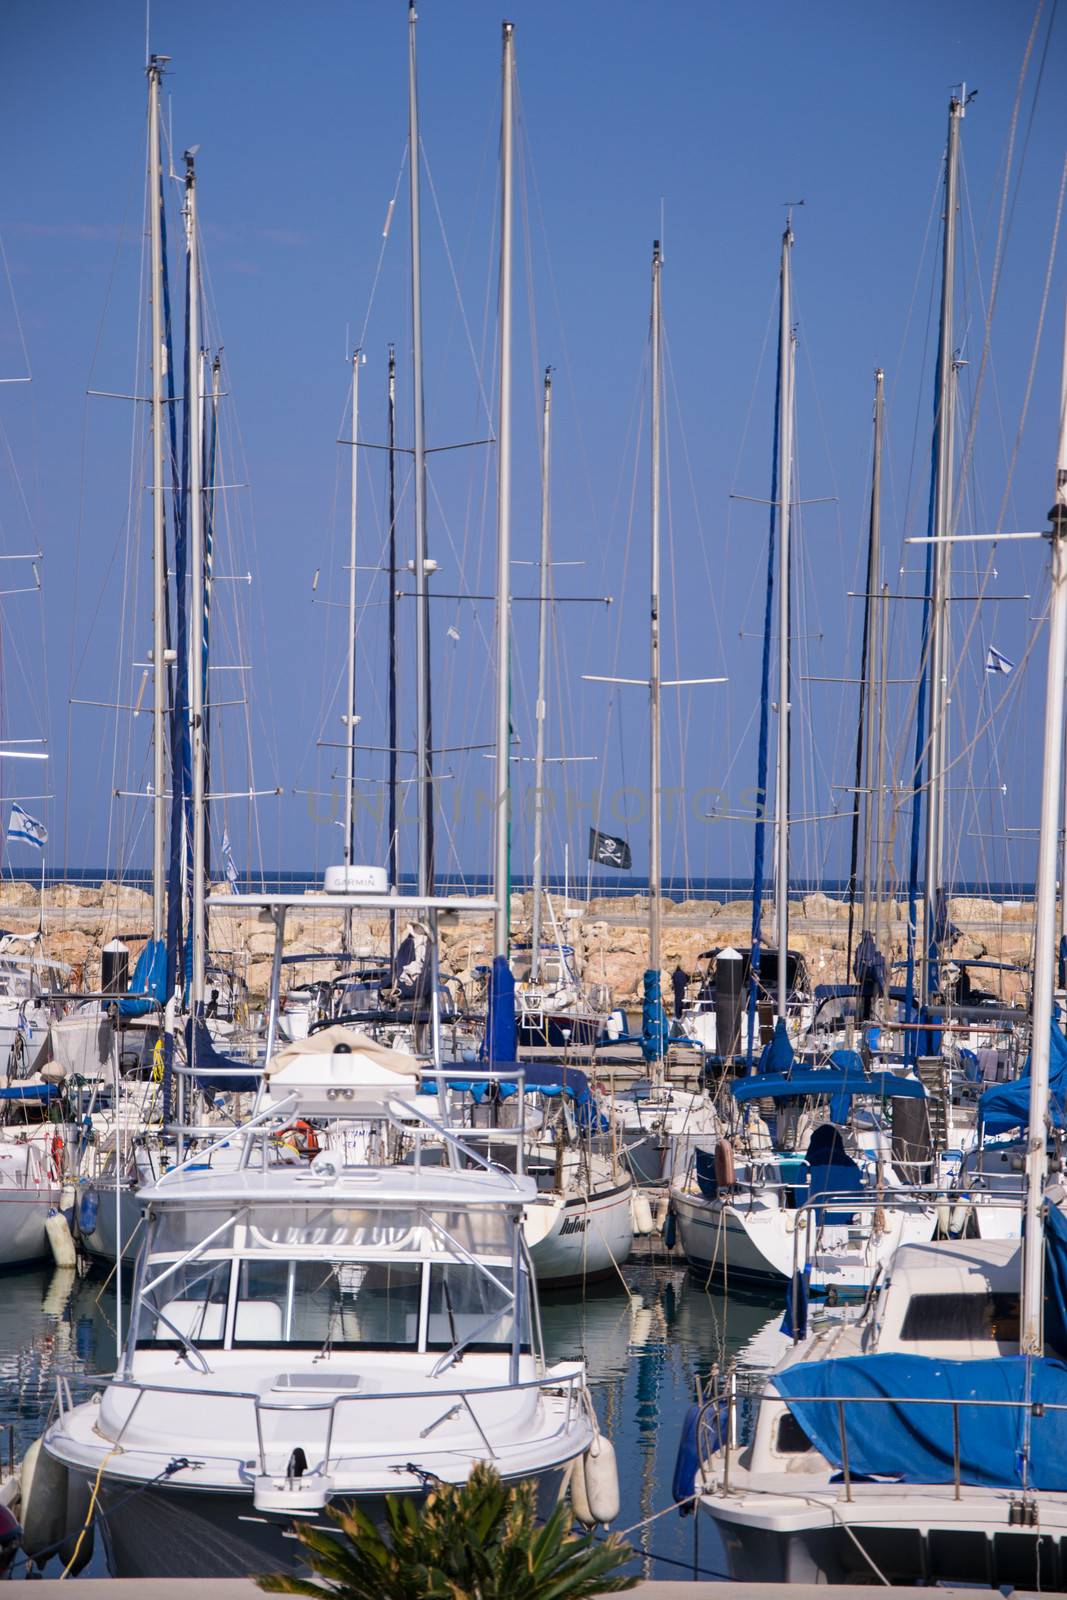 The yachts at the coast Tel-Aviv, Israel